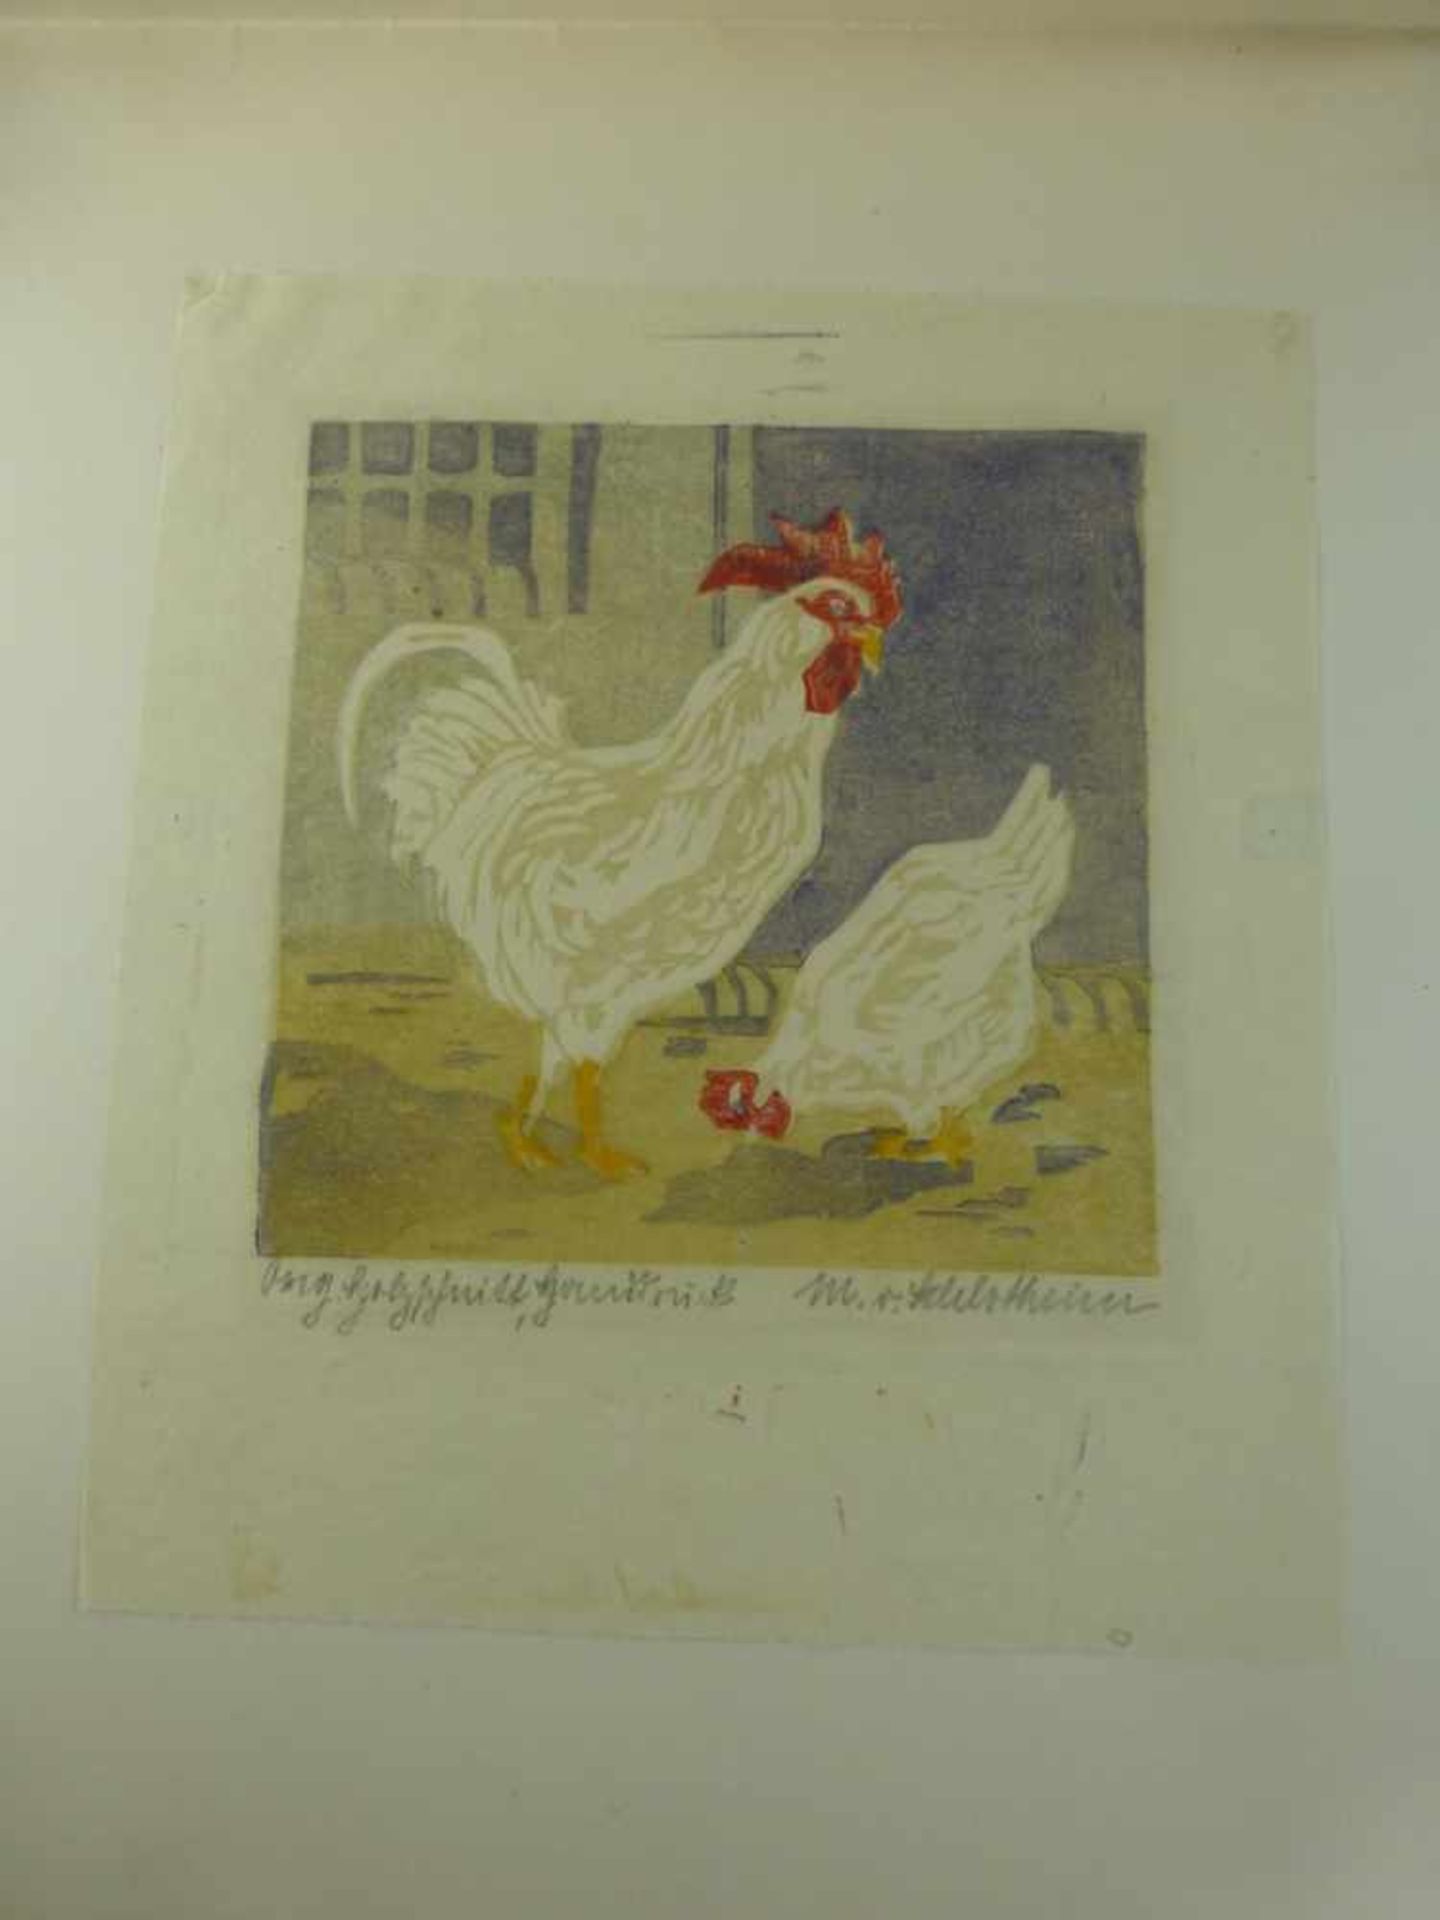 Schlotheim von, Margot (1884 - 1974), Farbholzschnitt "Hühner", sign. u. bez. Orig.Holzschnitt